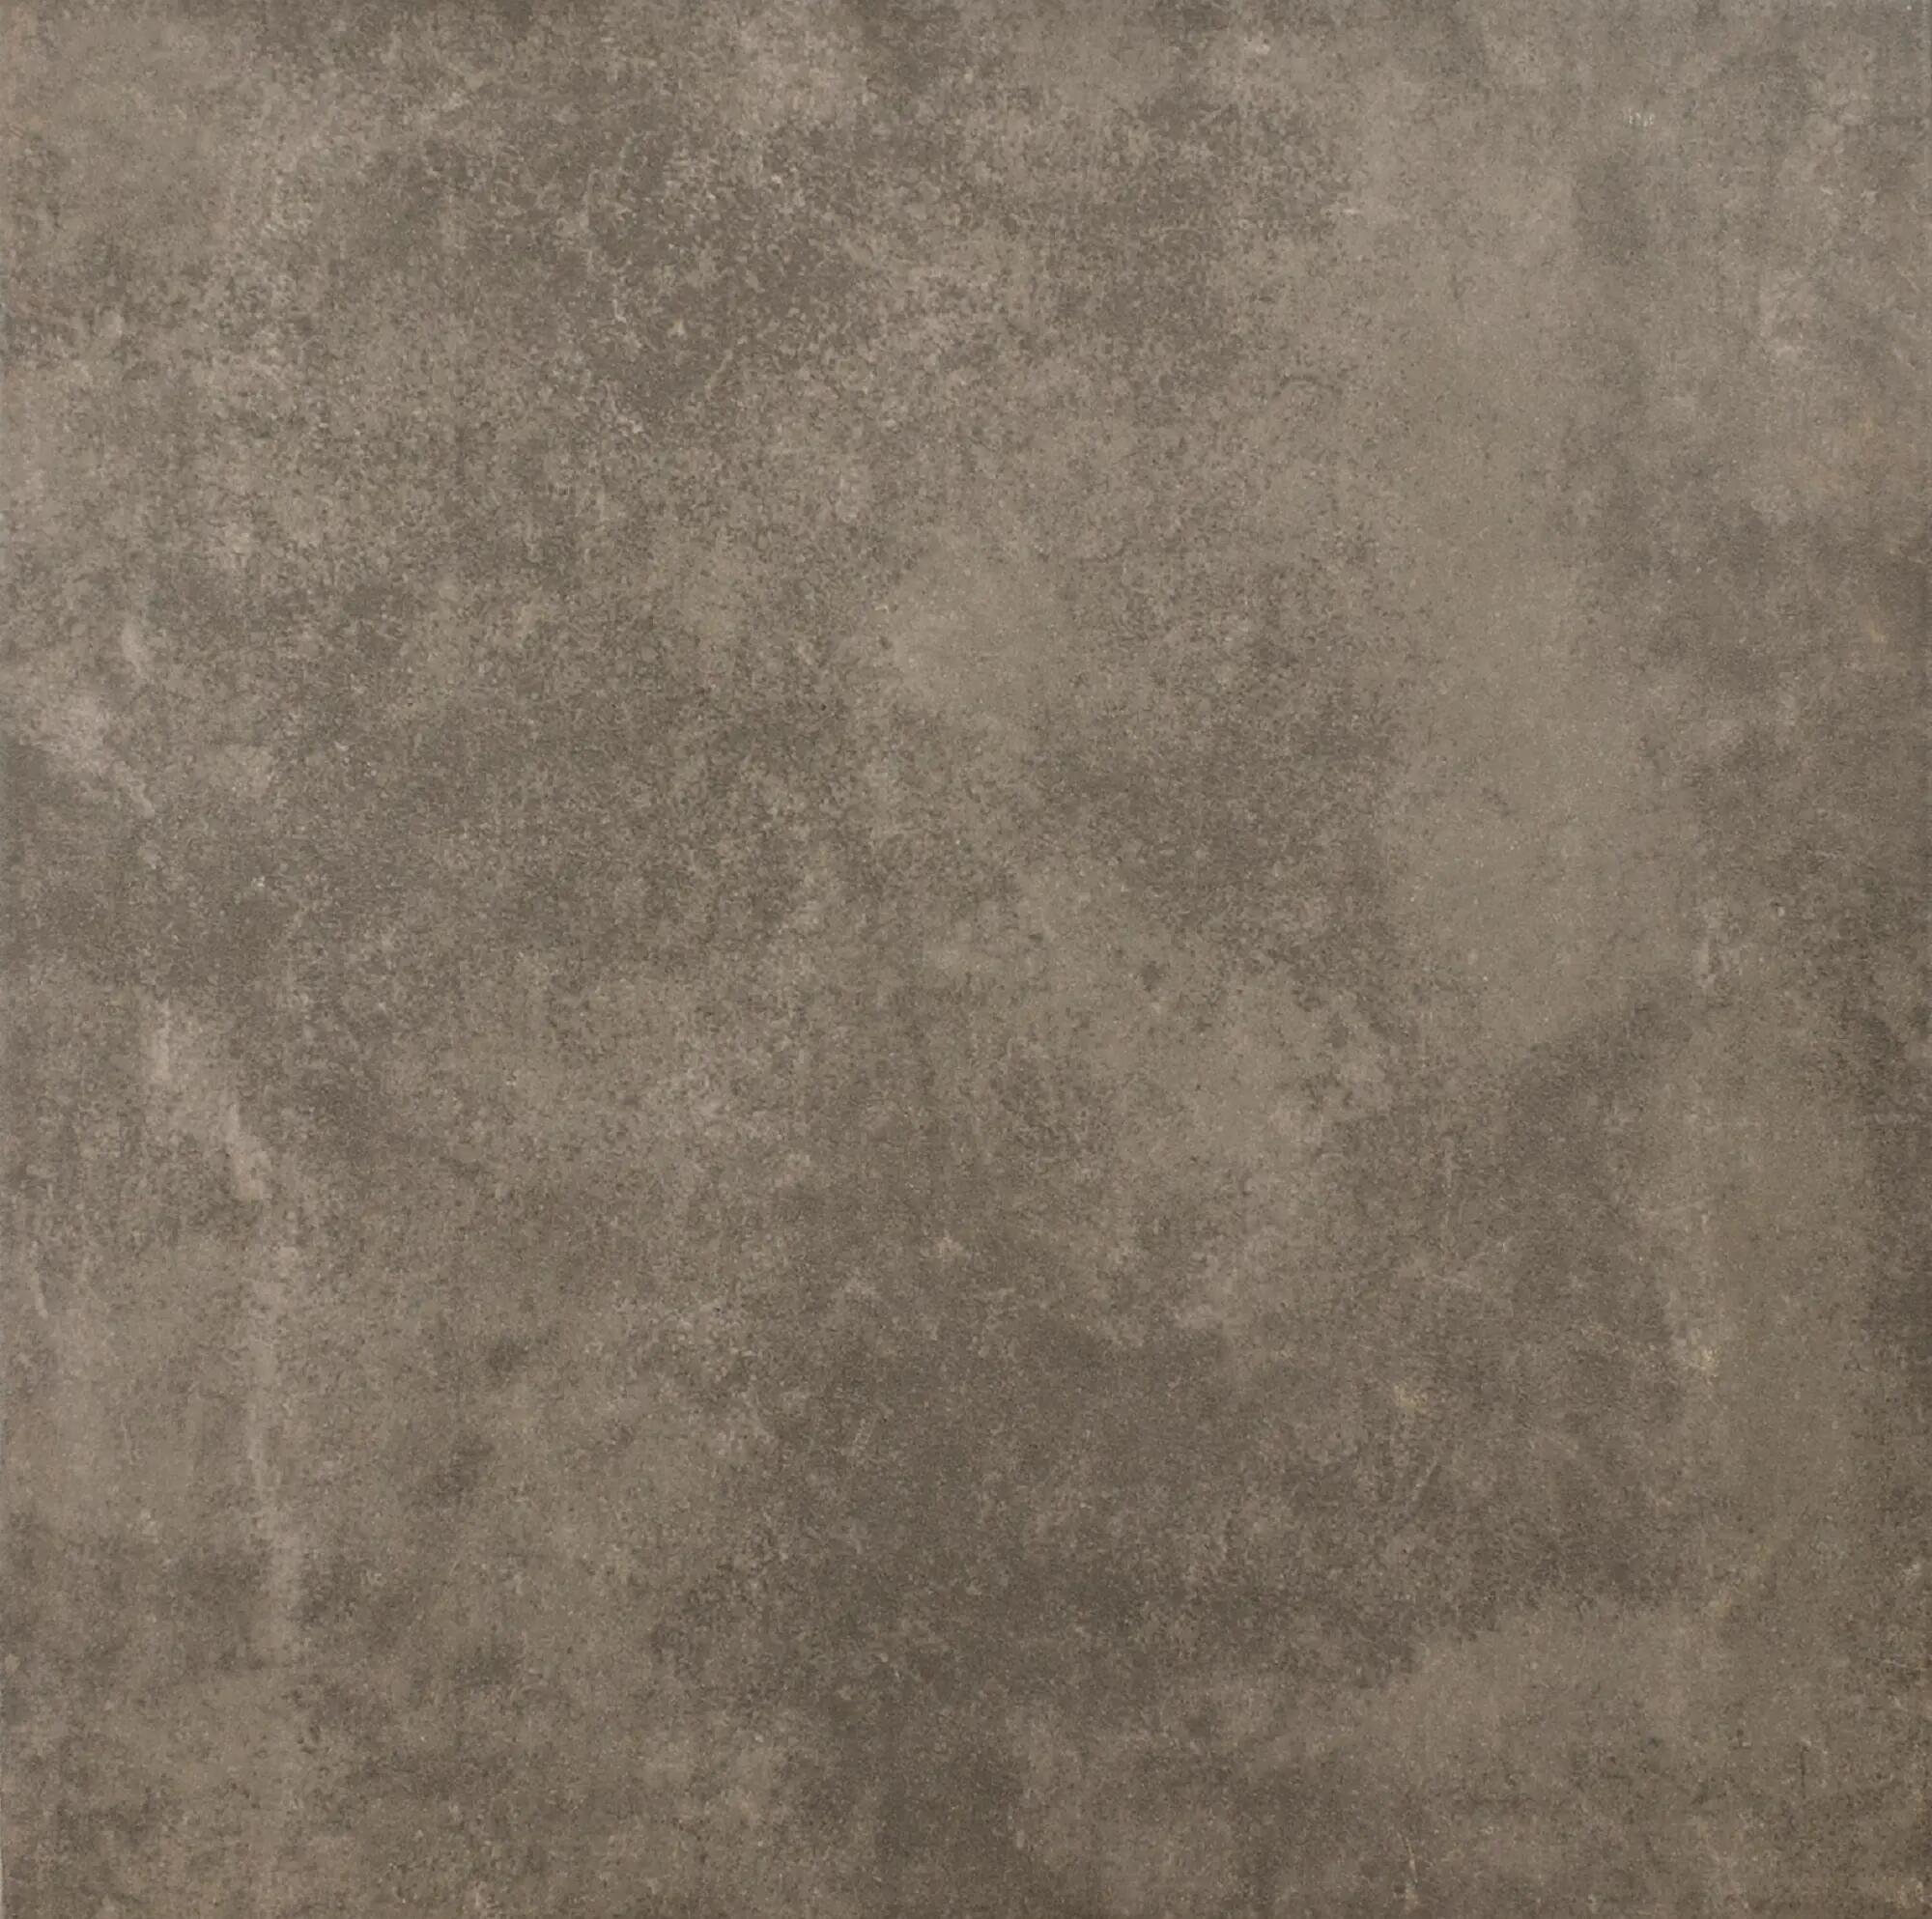 Suelo cerámico detroit efecto terracota gris 33.3x33.3 cm c3